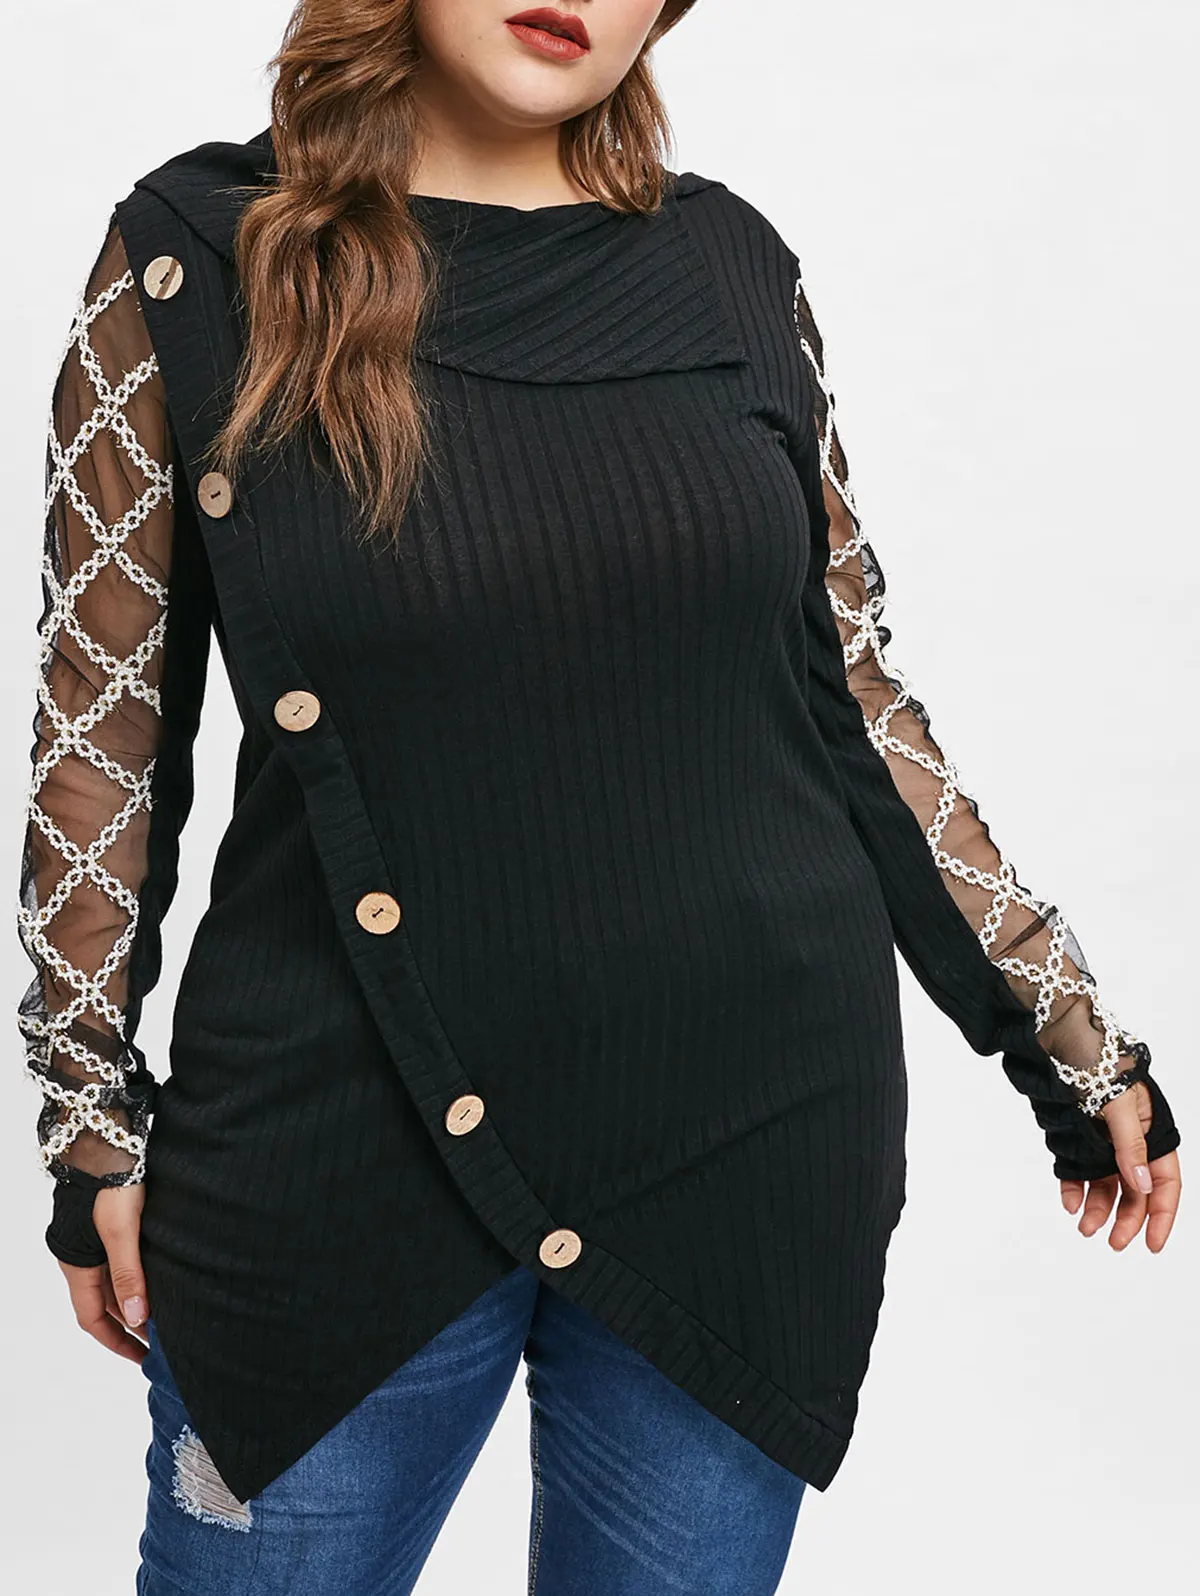 ROSEGAL размера плюс 5XL-L ассиметричный сексуальный сетчатый кружевной вязаный свитер для женщин более размера d джемпер туника пуловер вязанный Pull Femme Топы - Цвет: Black